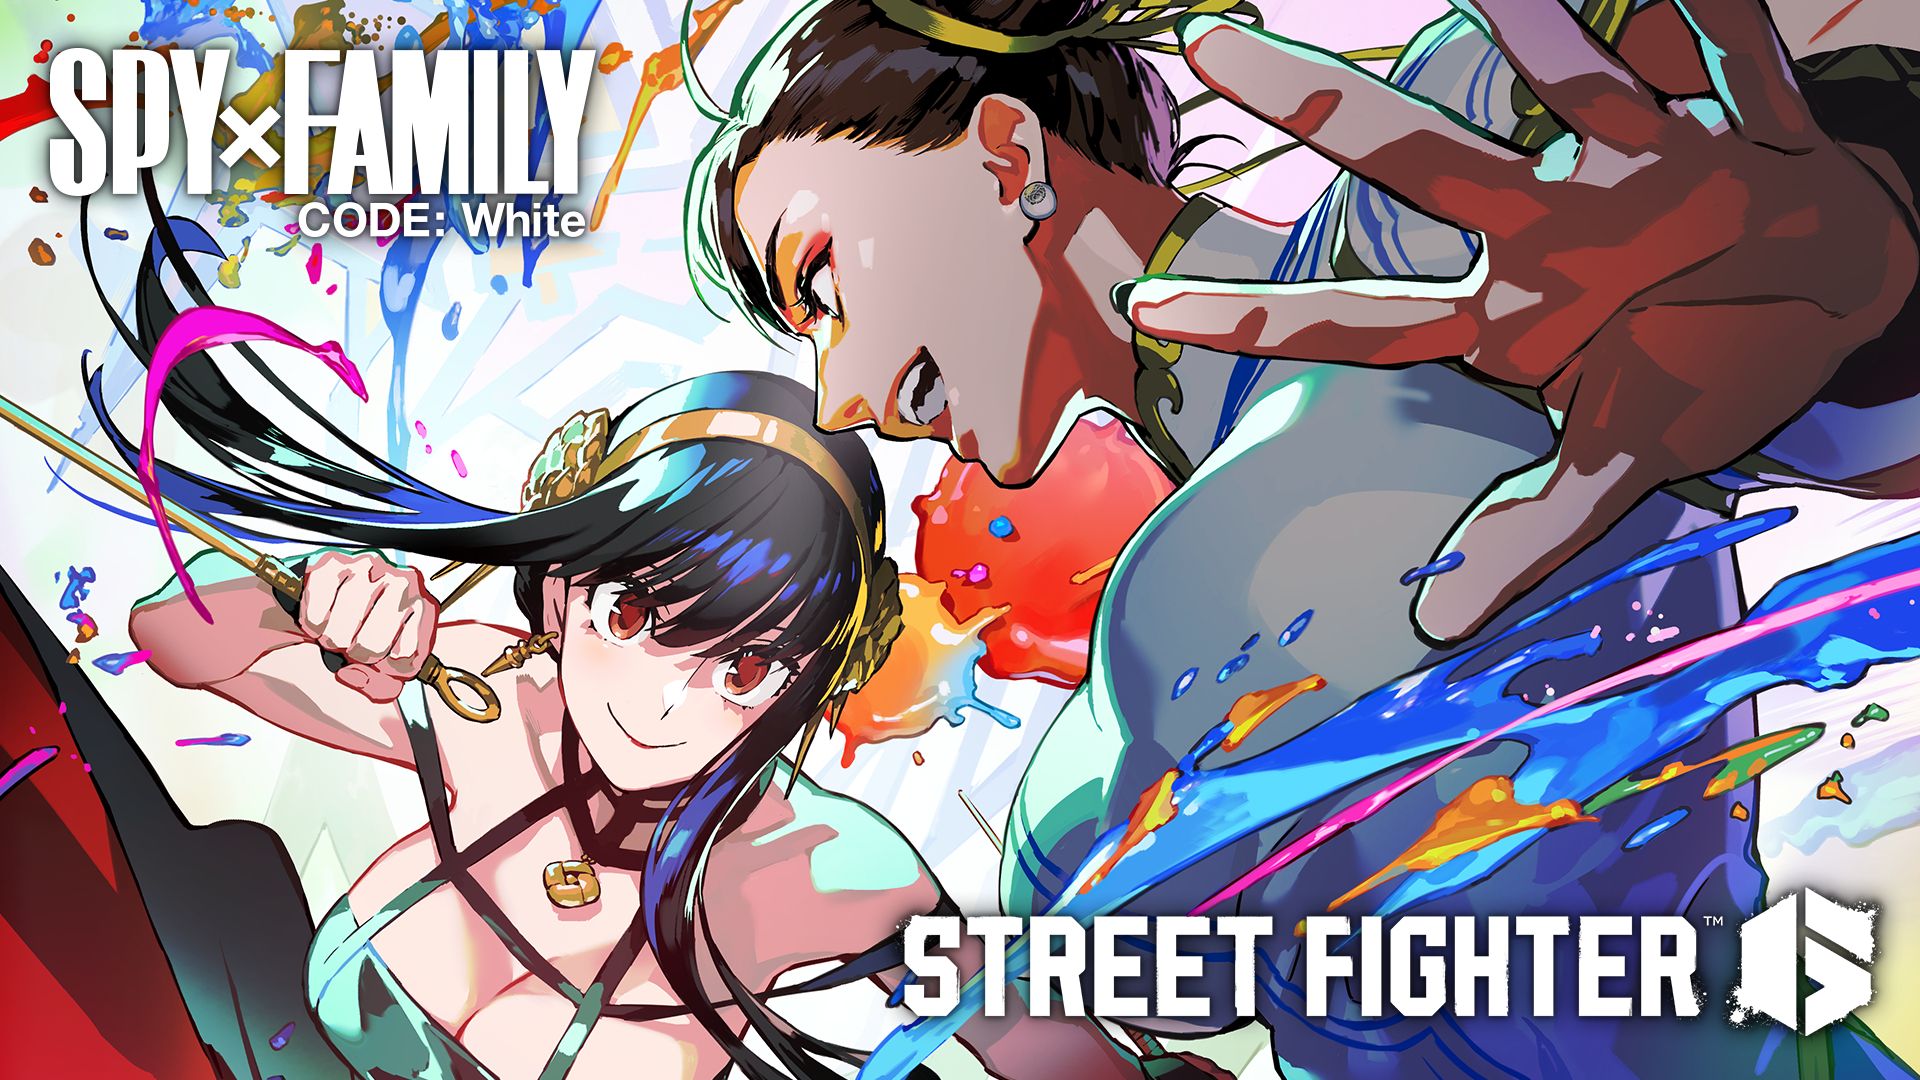 street-fighter-arriva-la-collaborazione-con-sp-yx-family-main